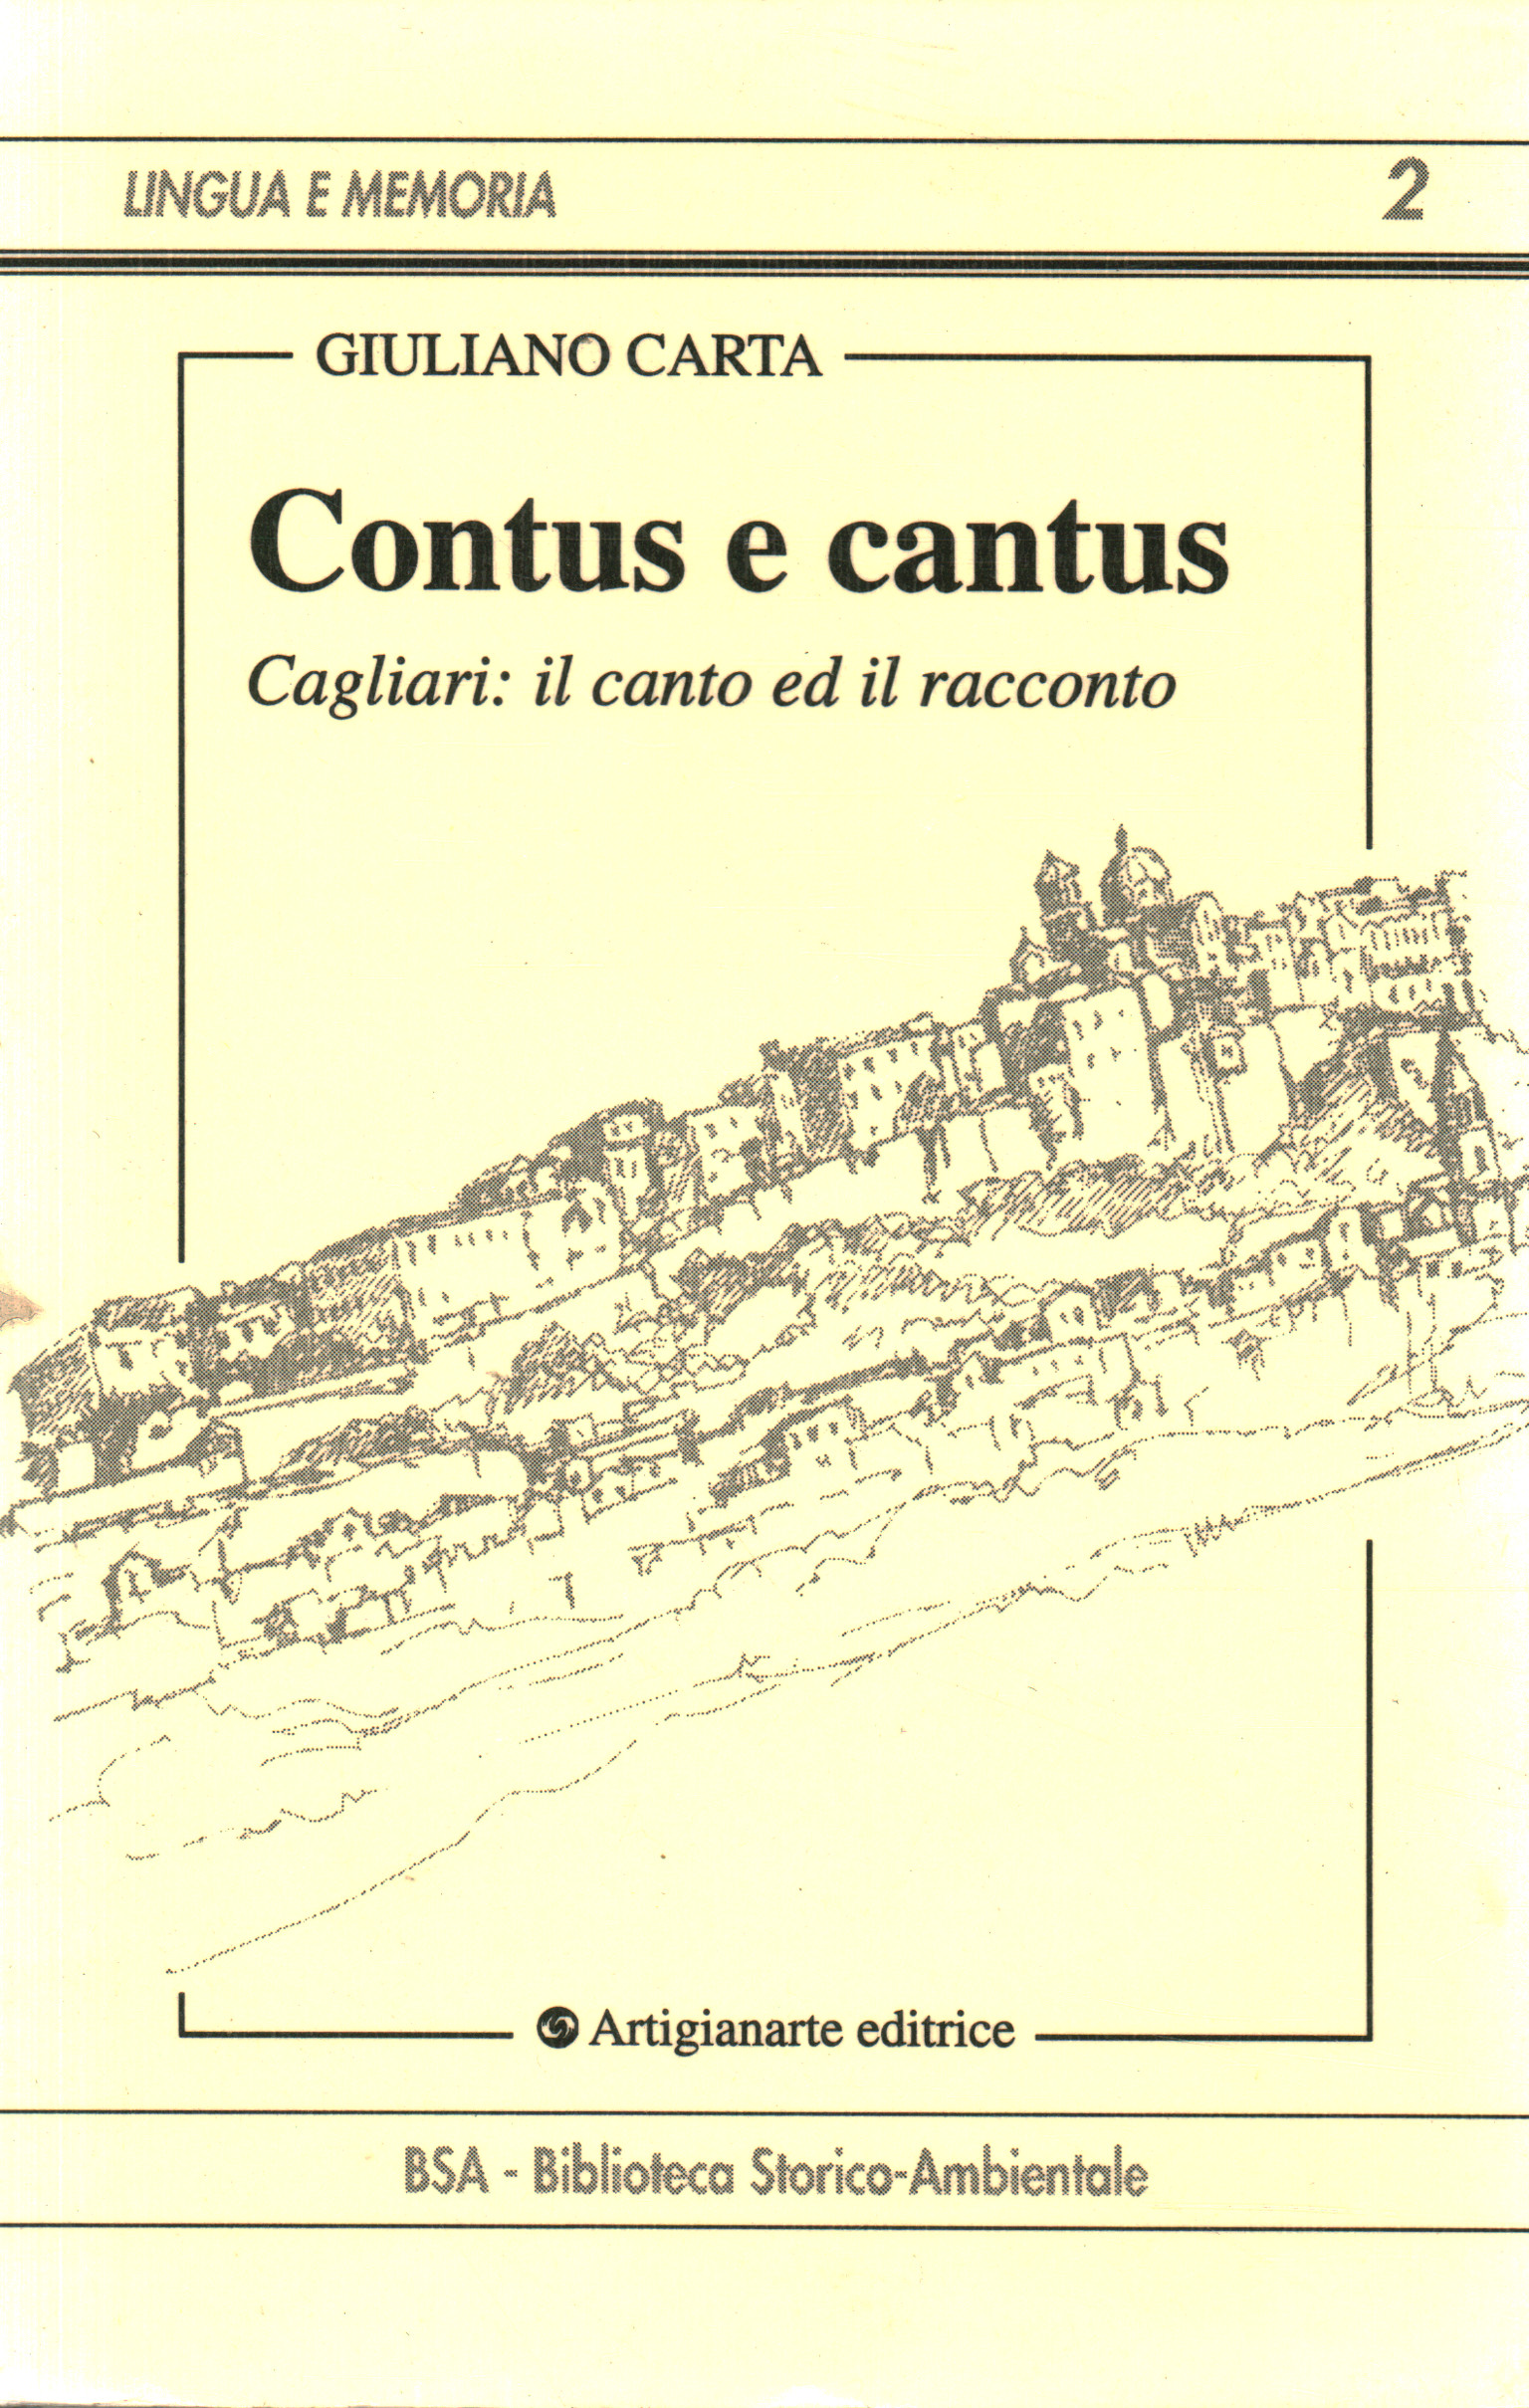 Contus et cantus, Giuliano Carta